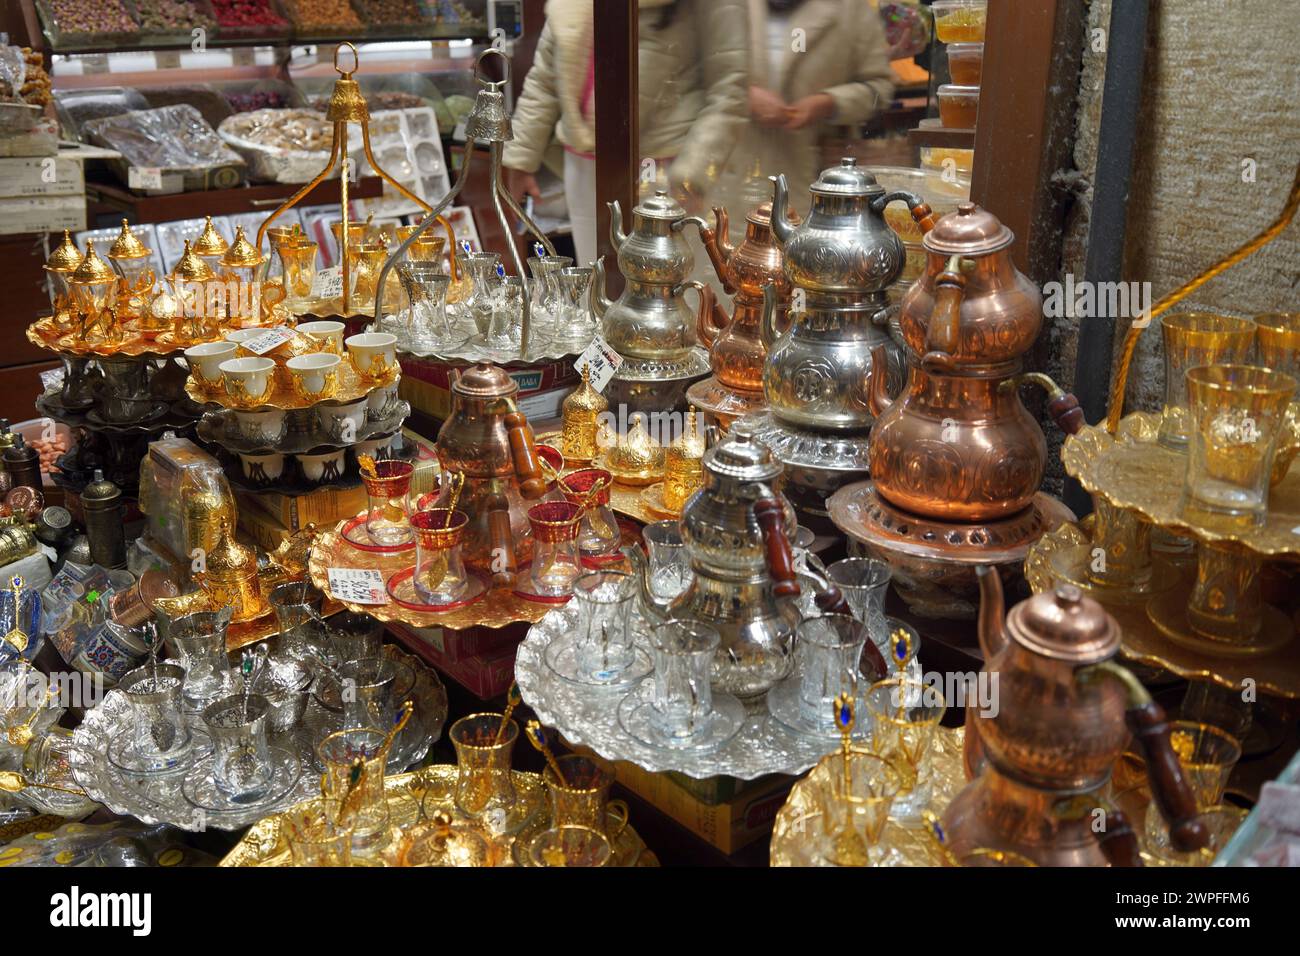 Farbenfrohe Produkte auf dem Gewürzbasar (ägyptisch) in Istanbul, Türkei Stockfoto